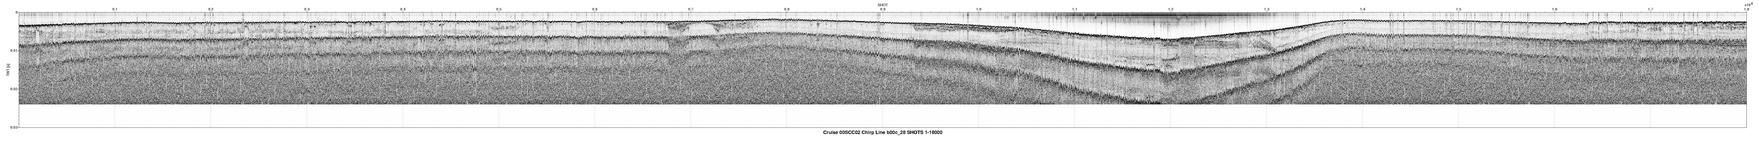 00SCC02 b00c_28 seismic profile image